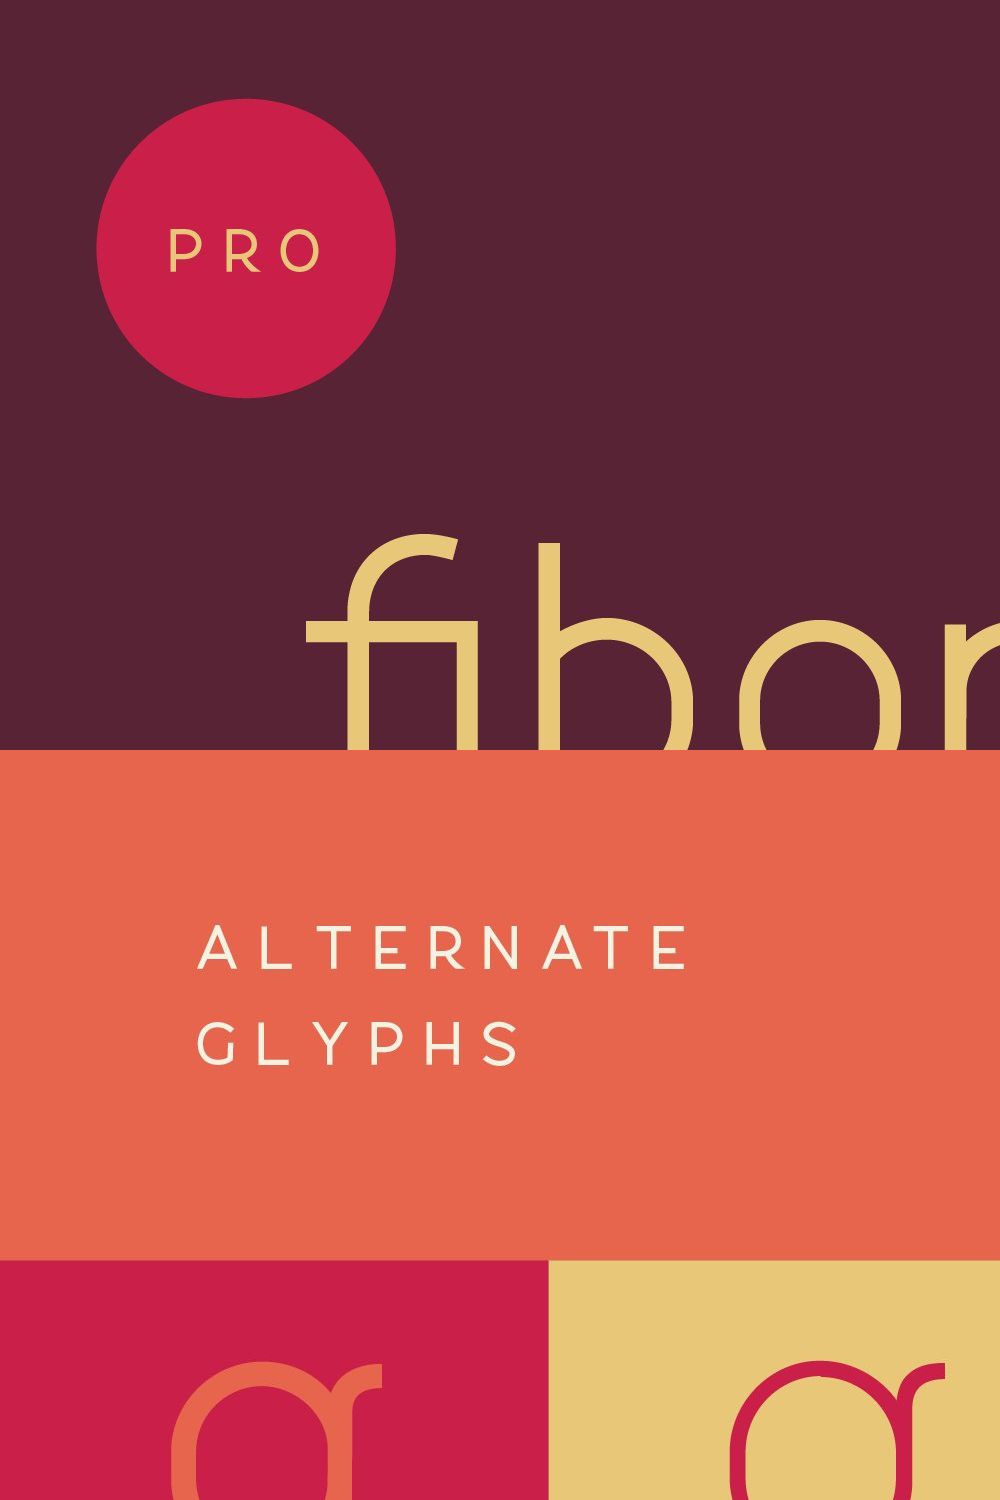 Fibon Sans Font Family pinterest preview image.